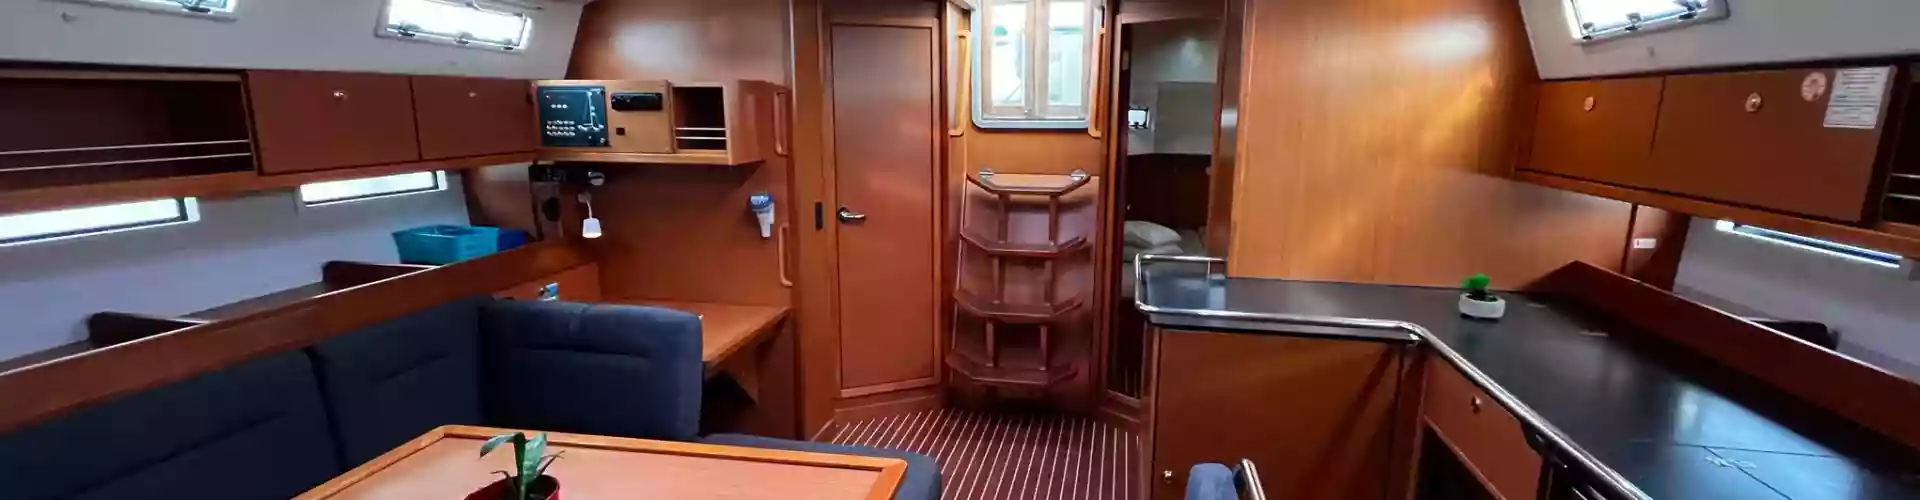 парусная лодка Бавариа Цруисер 45